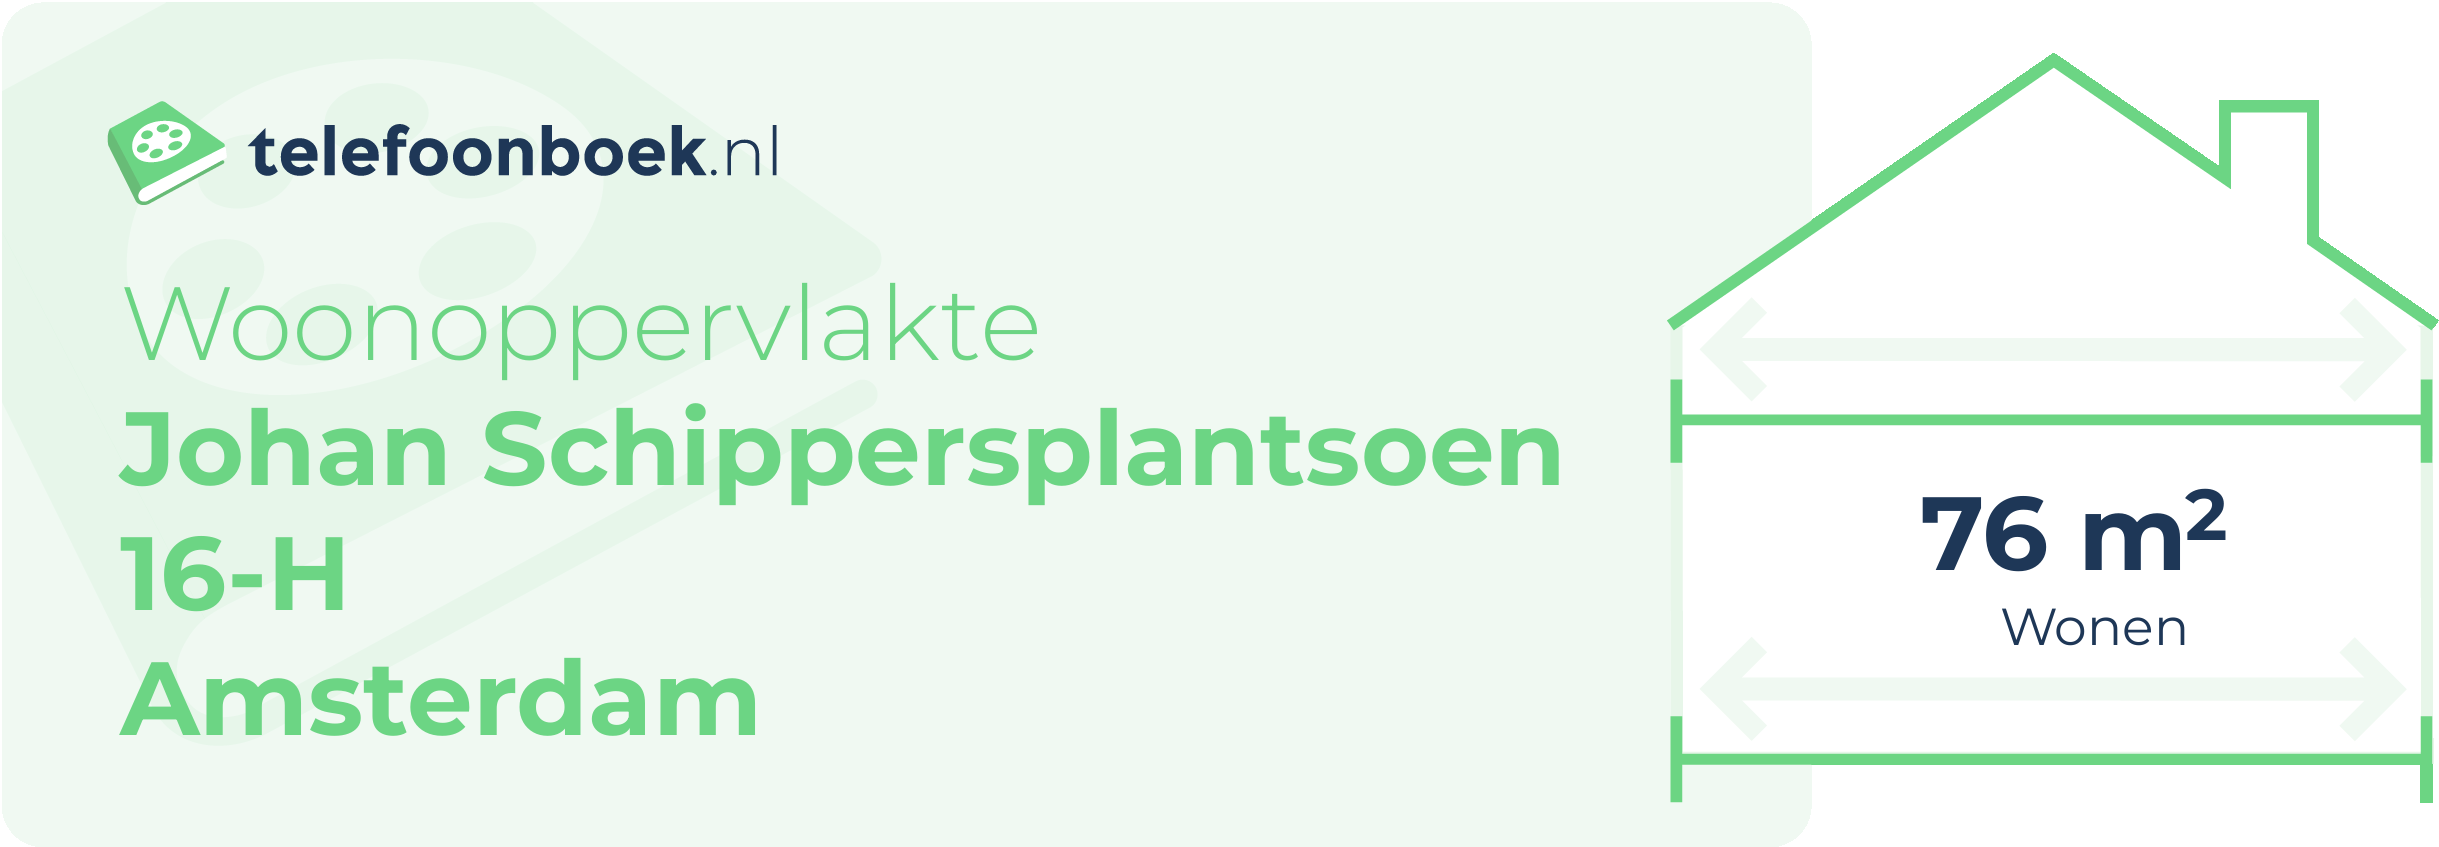 Woonoppervlakte Johan Schippersplantsoen 16-H Amsterdam